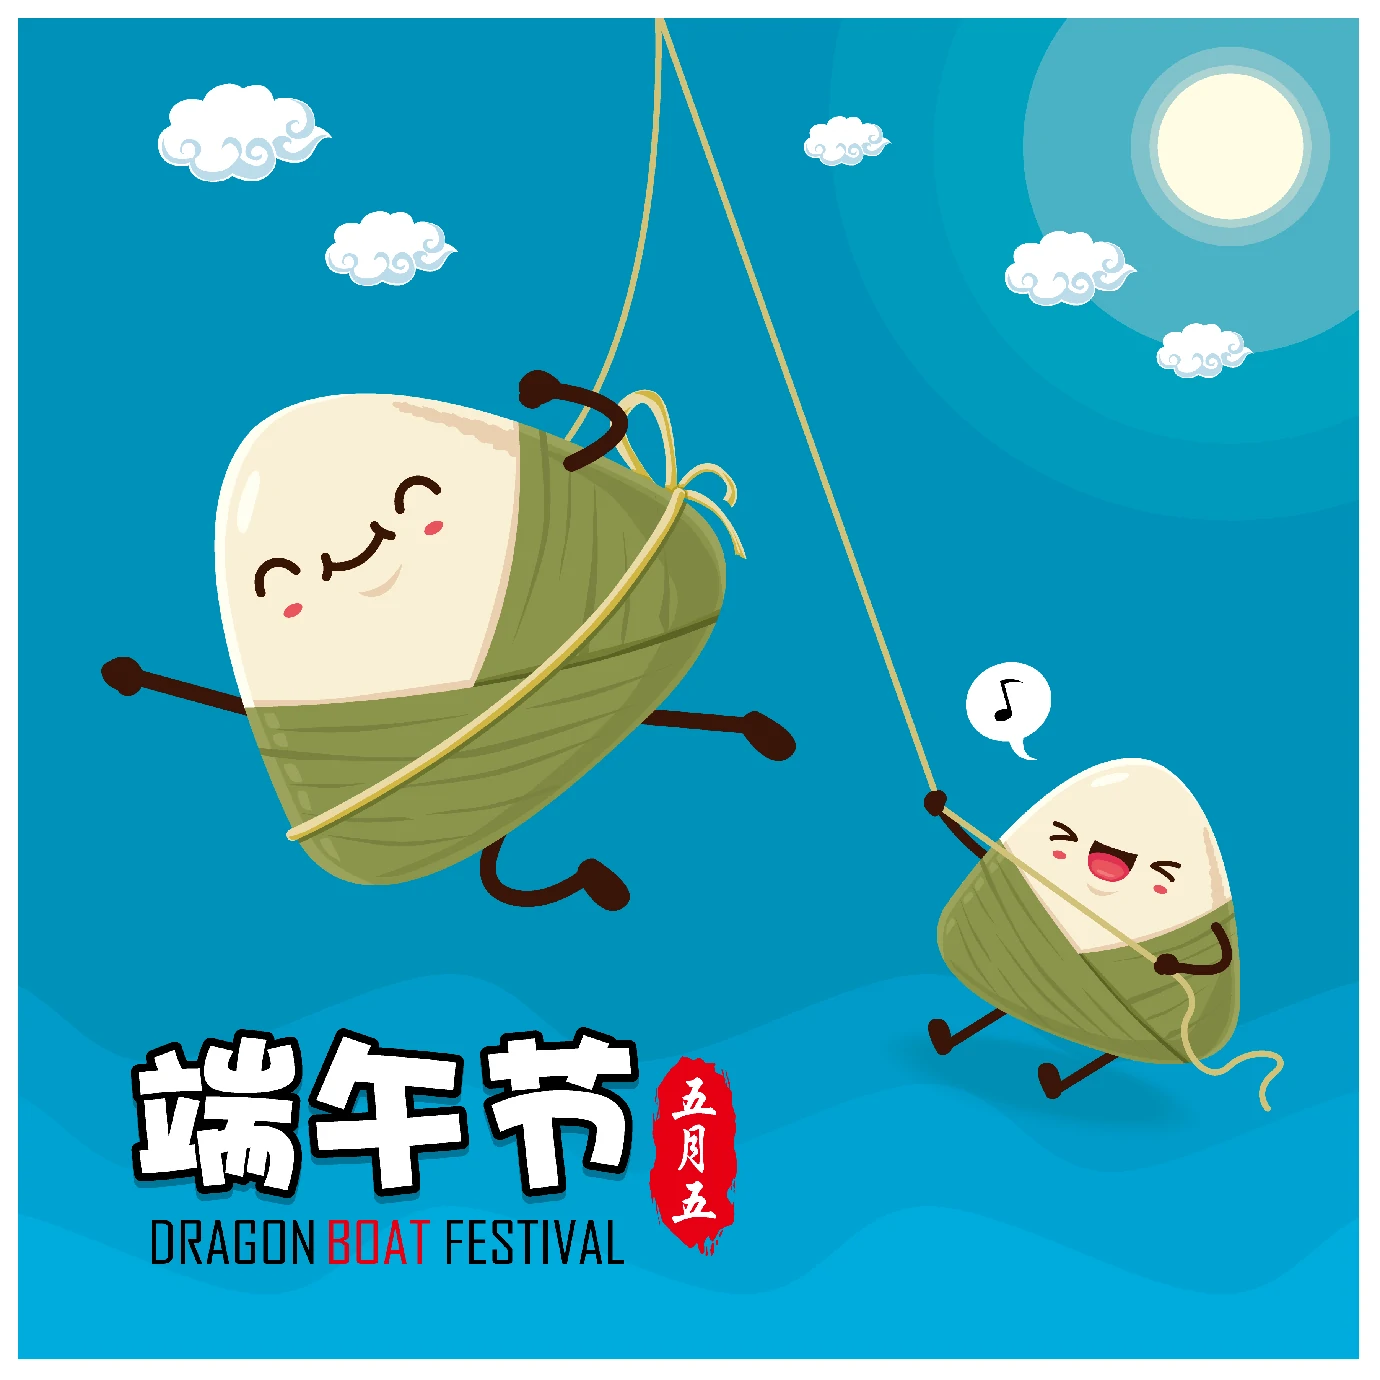 中国传统节日卡通手绘端午节赛龙舟粽子插画海报AI矢量设计素材【066】